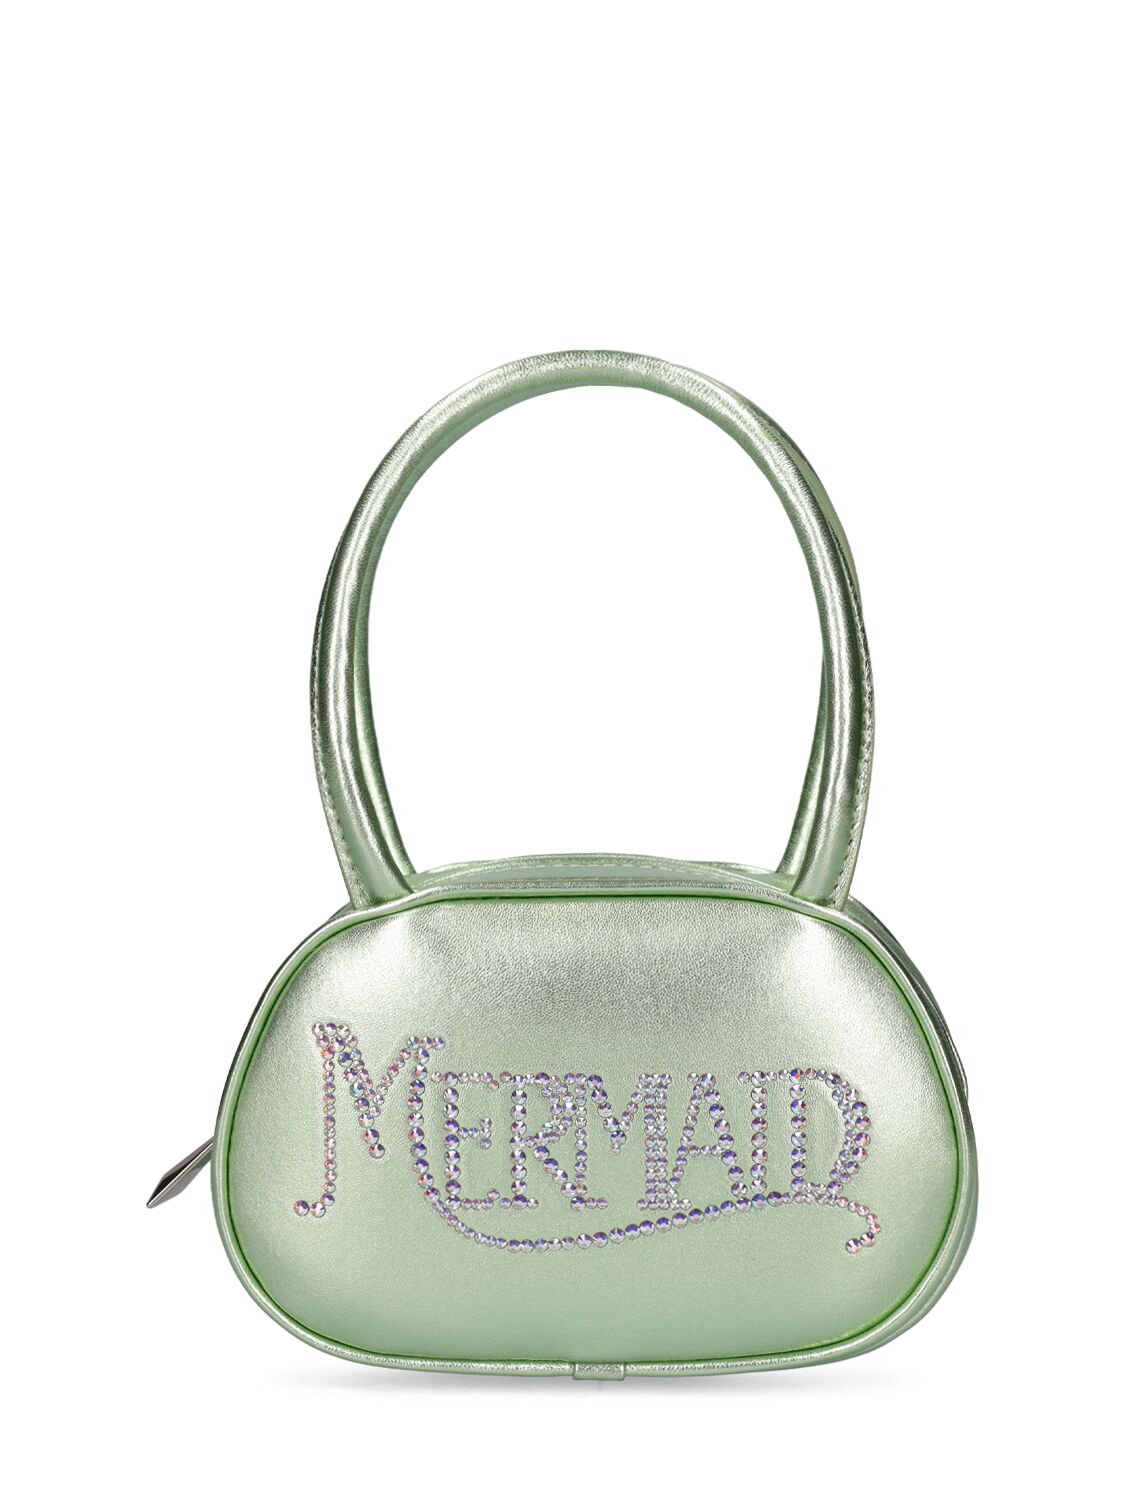 Superamini Mermaid Top Handle Bag